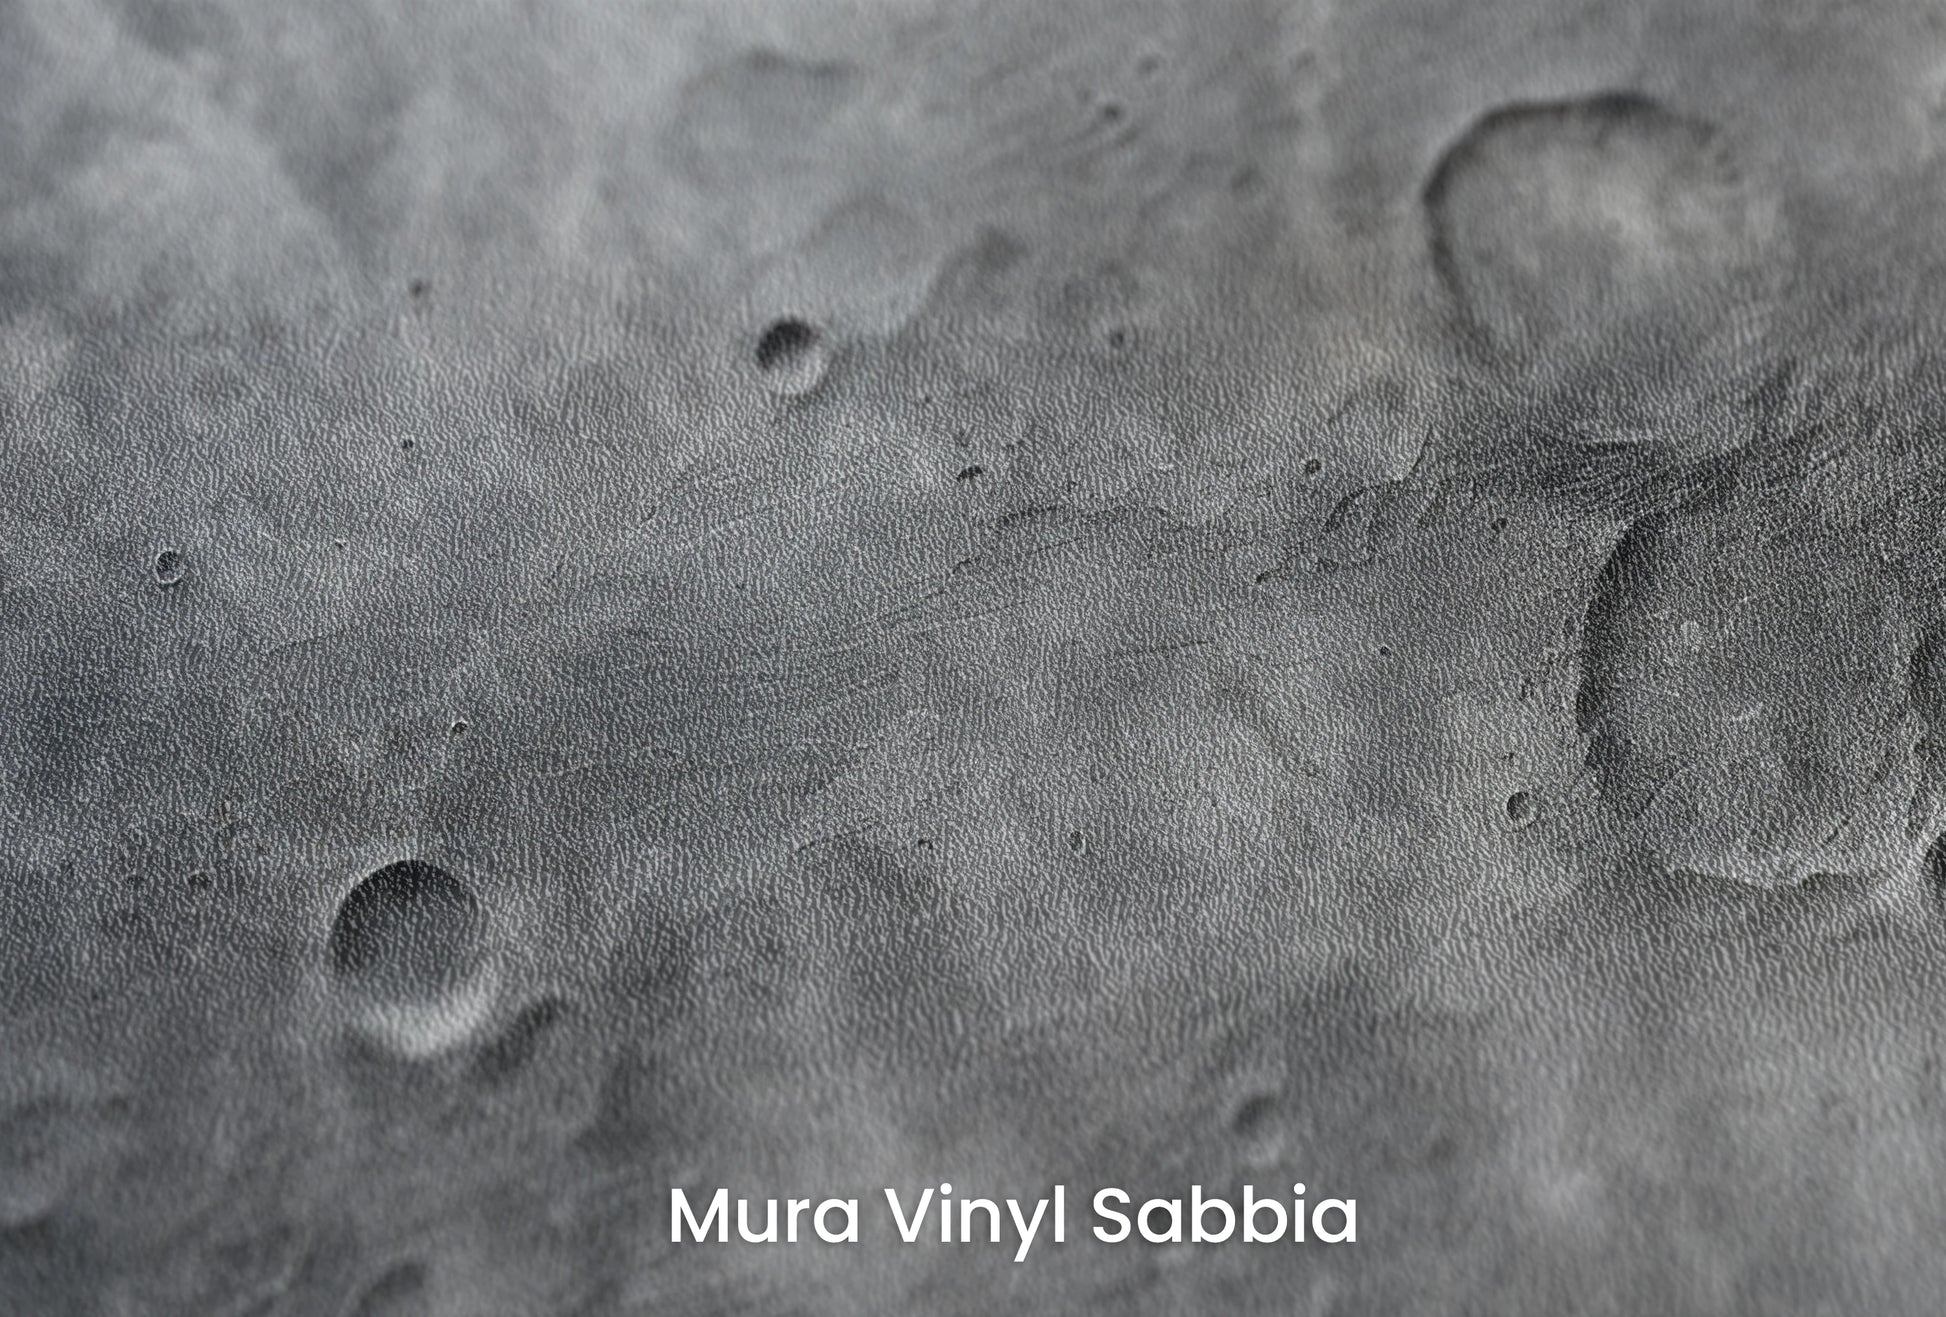 Zbliżenie na artystyczną fototapetę o nazwie Solar Waves na podłożu Mura Vinyl Sabbia struktura grubego ziarna piasku.